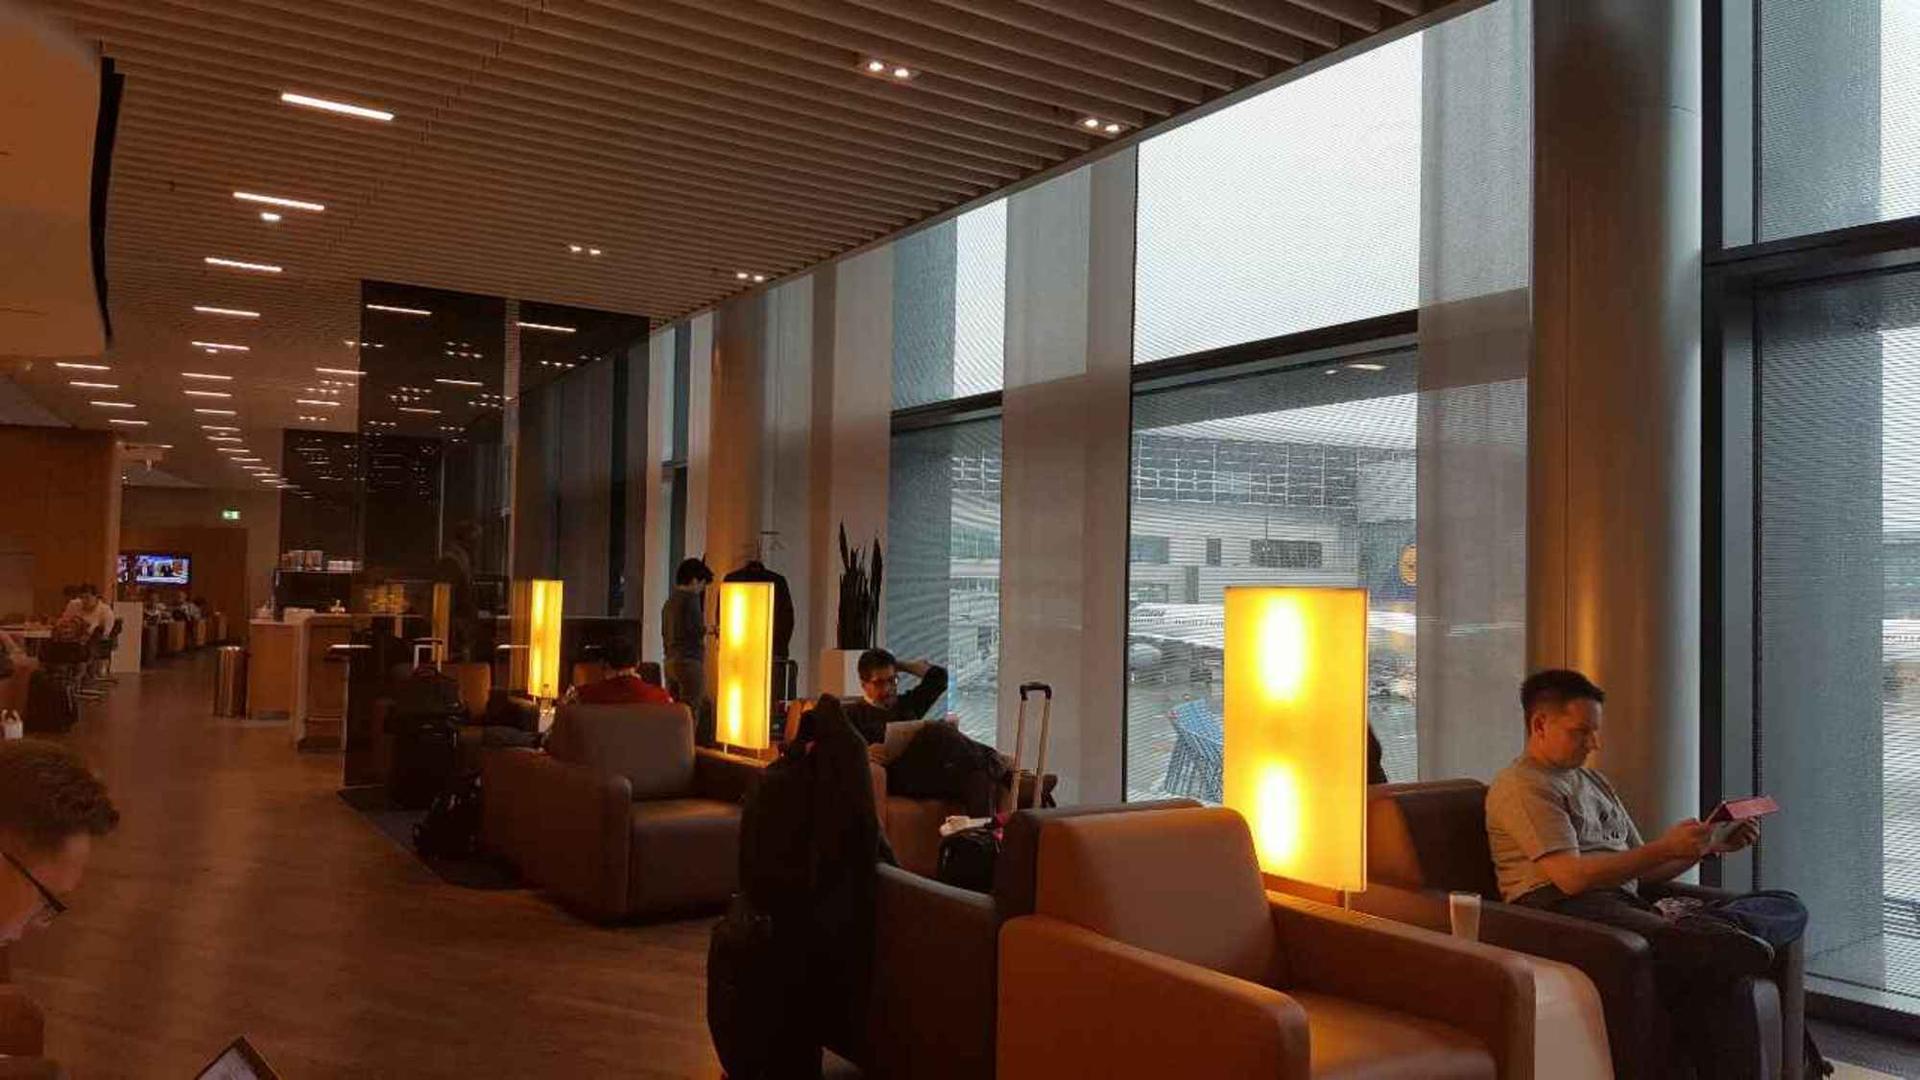 Lufthansa Senator Lounge (Schengen) image 4 of 6